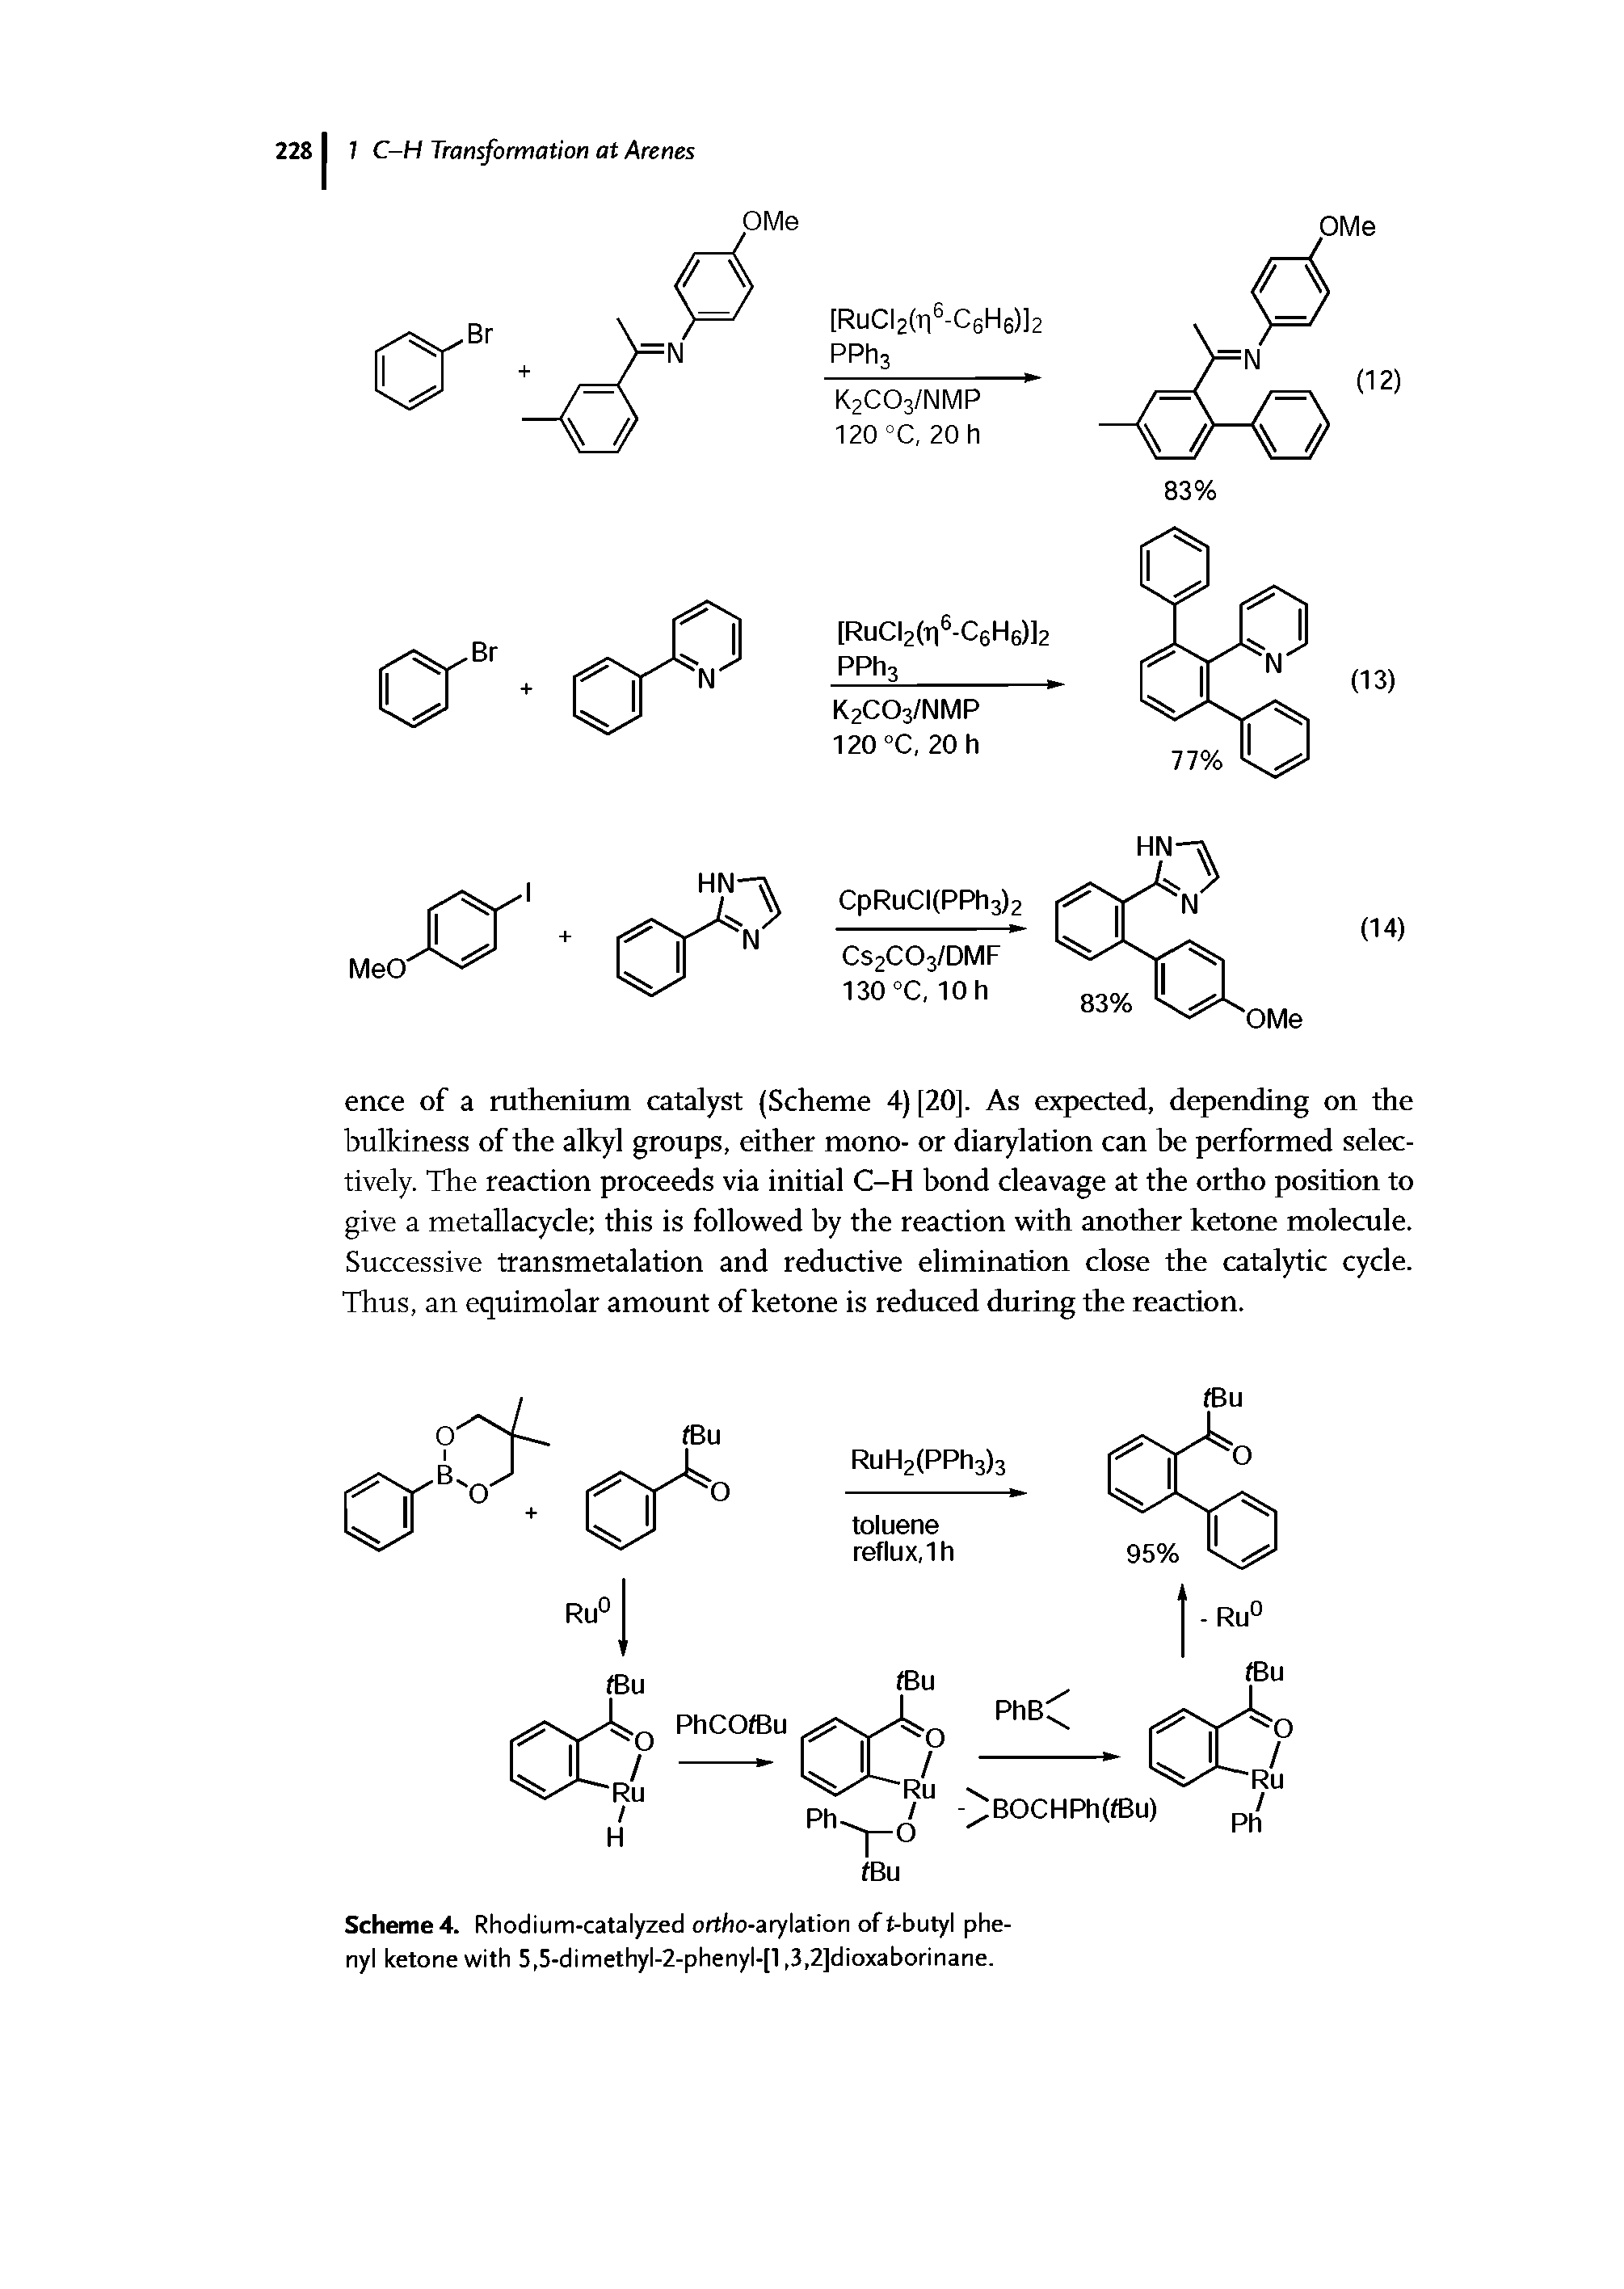 Scheme 4. Rhodium-catalyzed ortho-arylation of t-butyl phenyl ketone with 5,5-dimethyl-2-phenyl-[l, 3,2]dioxaborinane.